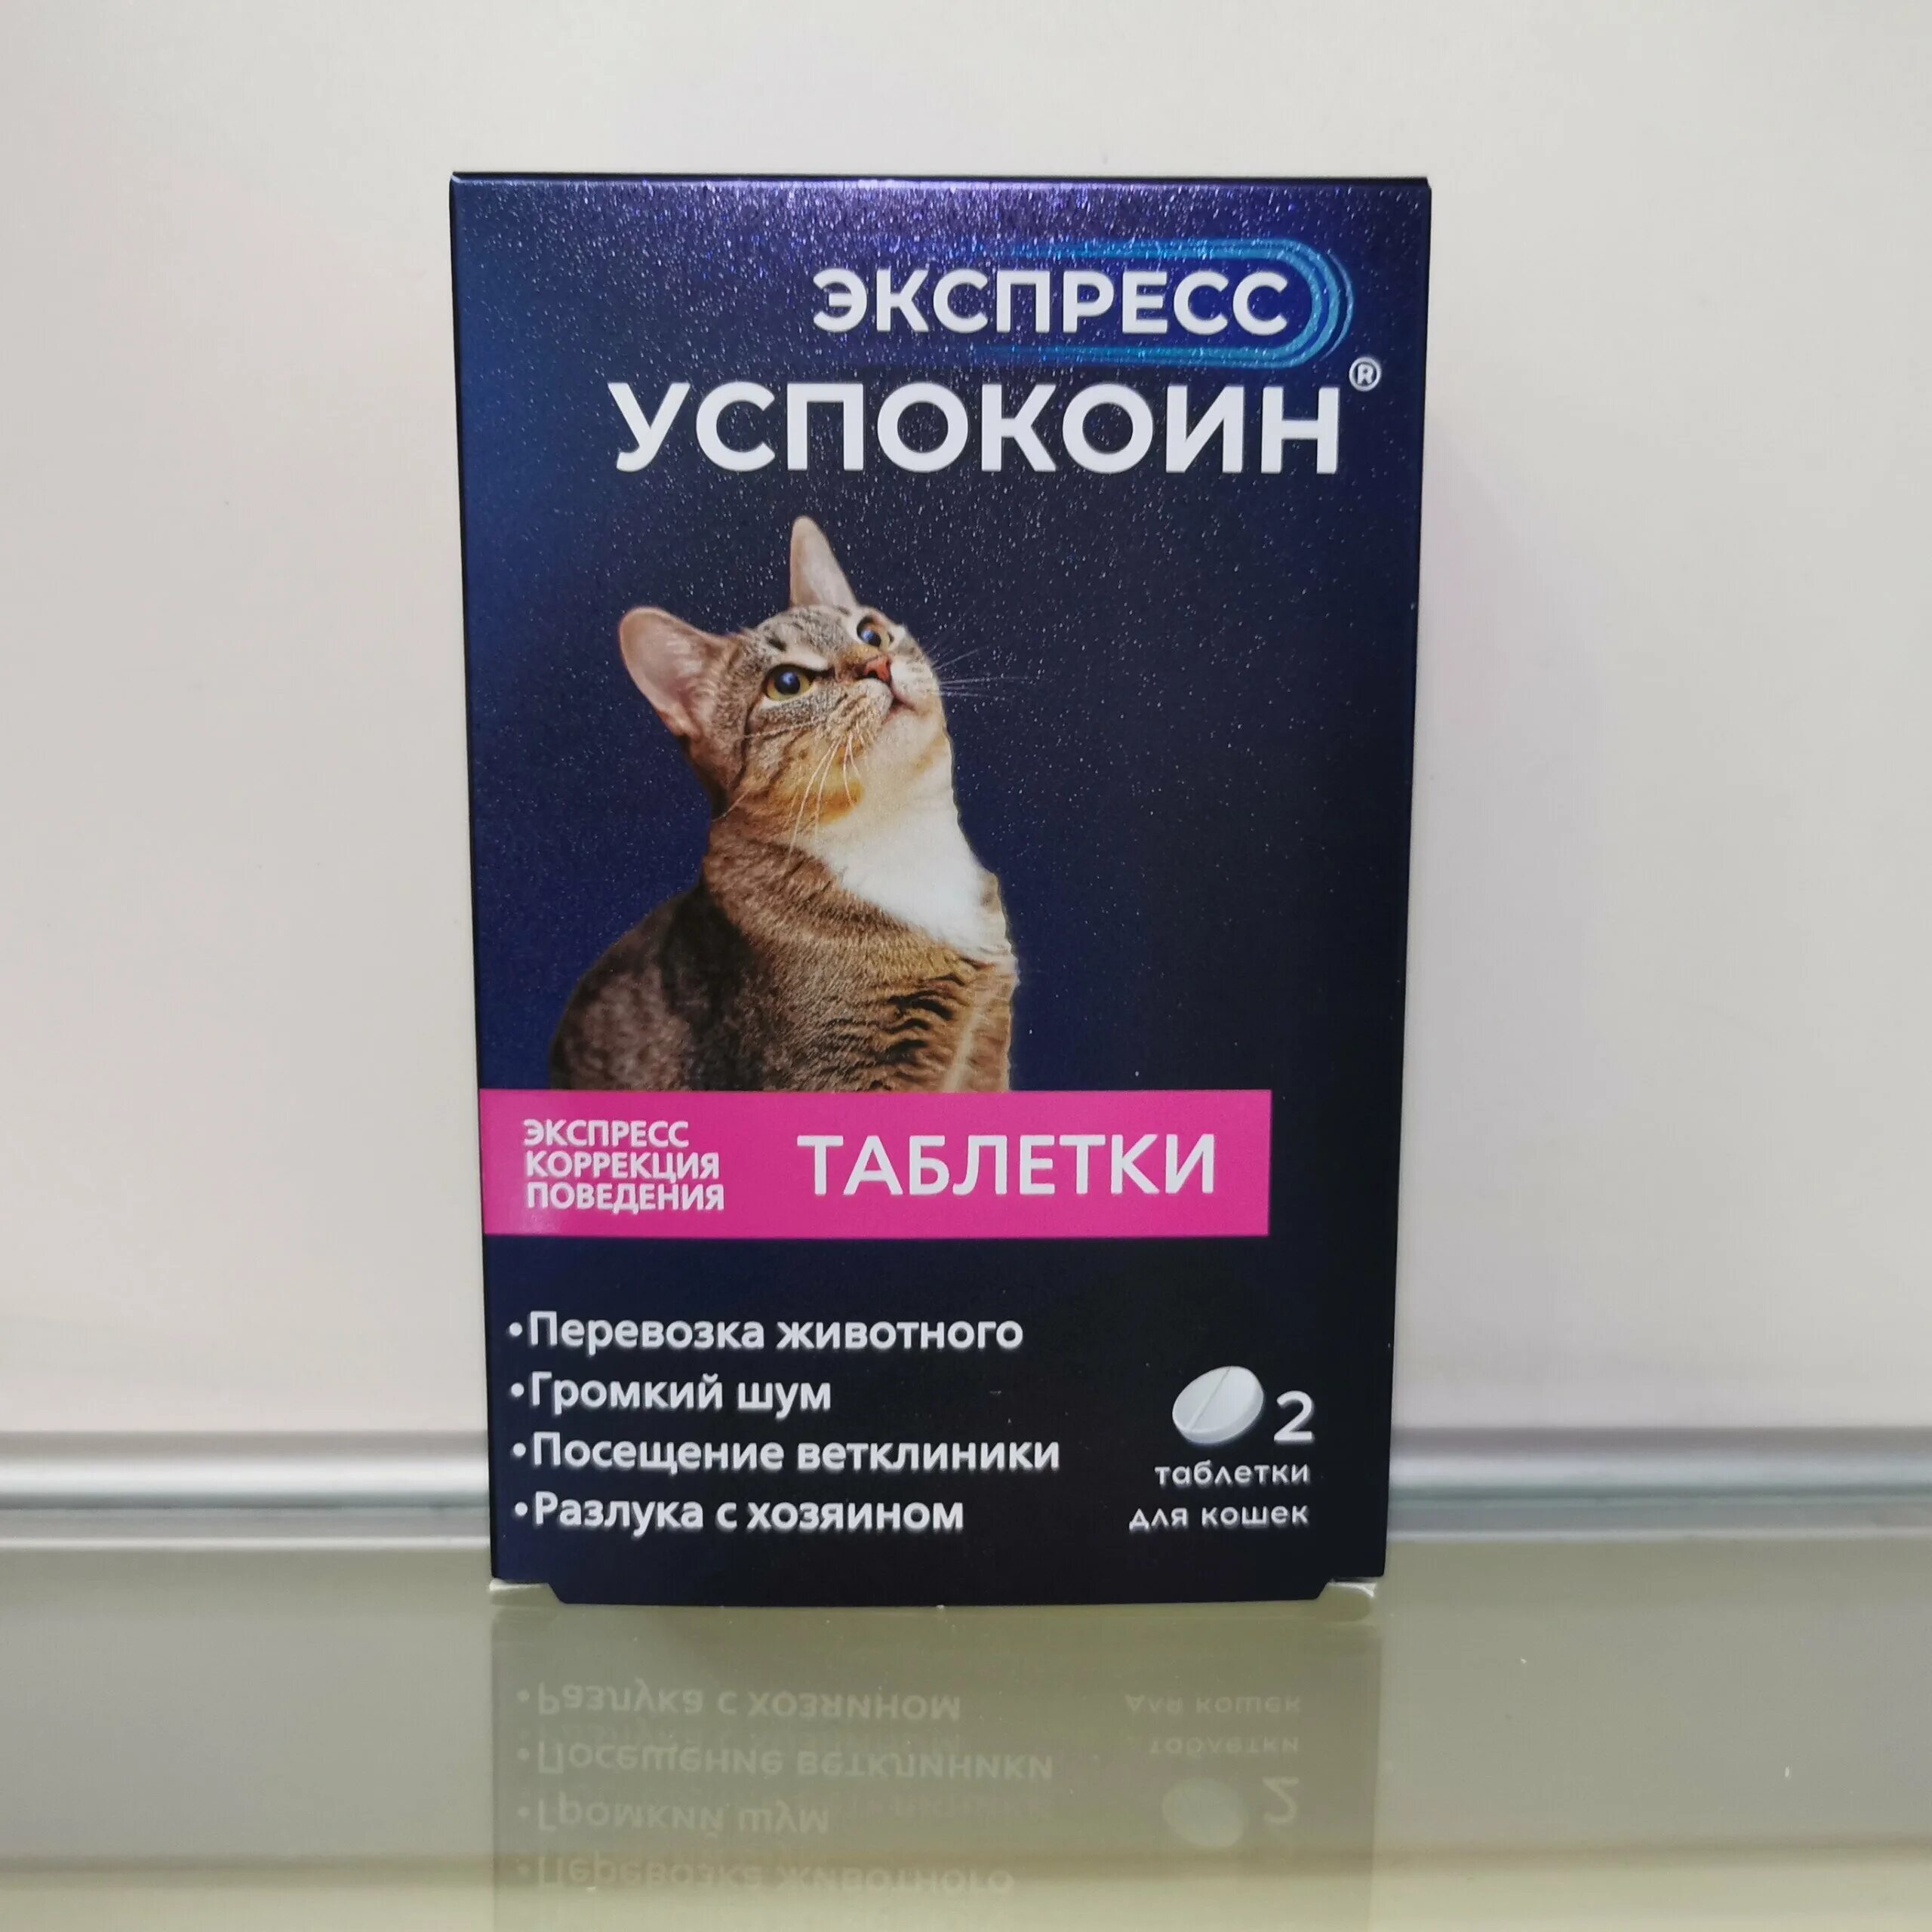 Таблетки успокоин для кошек